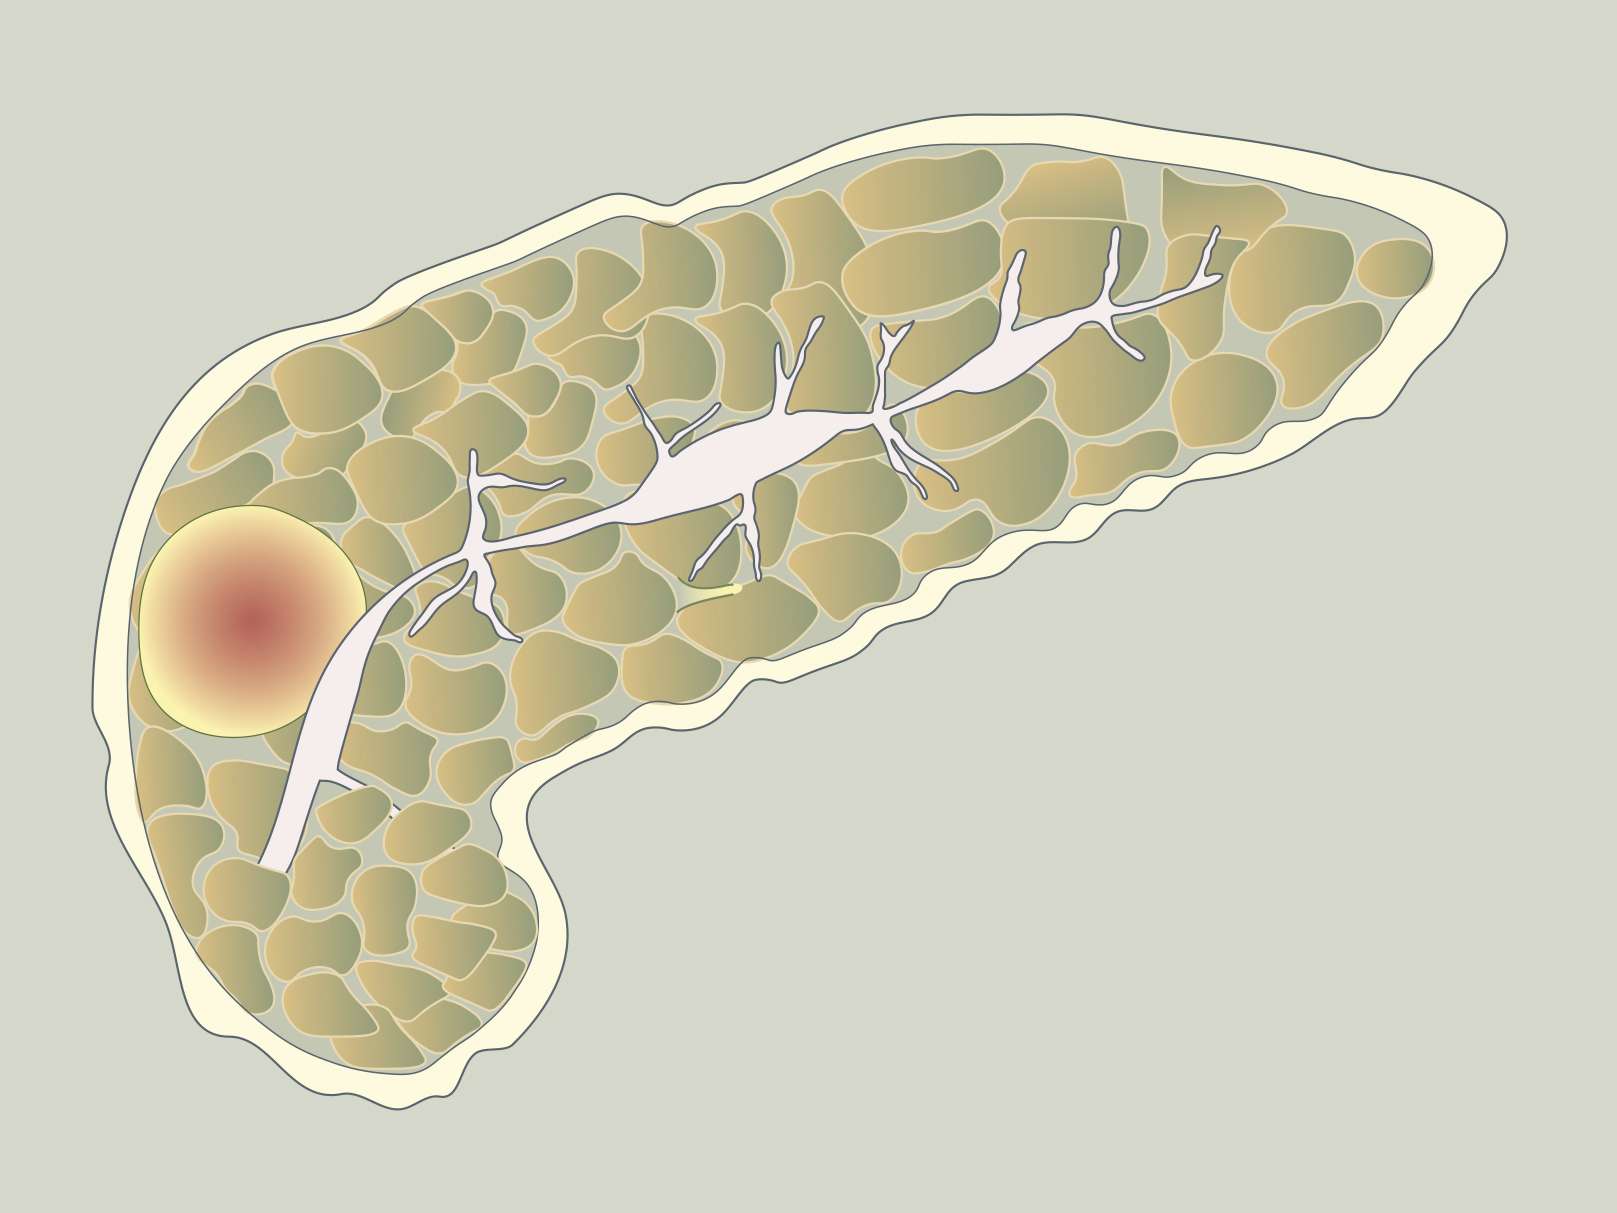 Pankreatitis autoimun: gejala dan rawatan